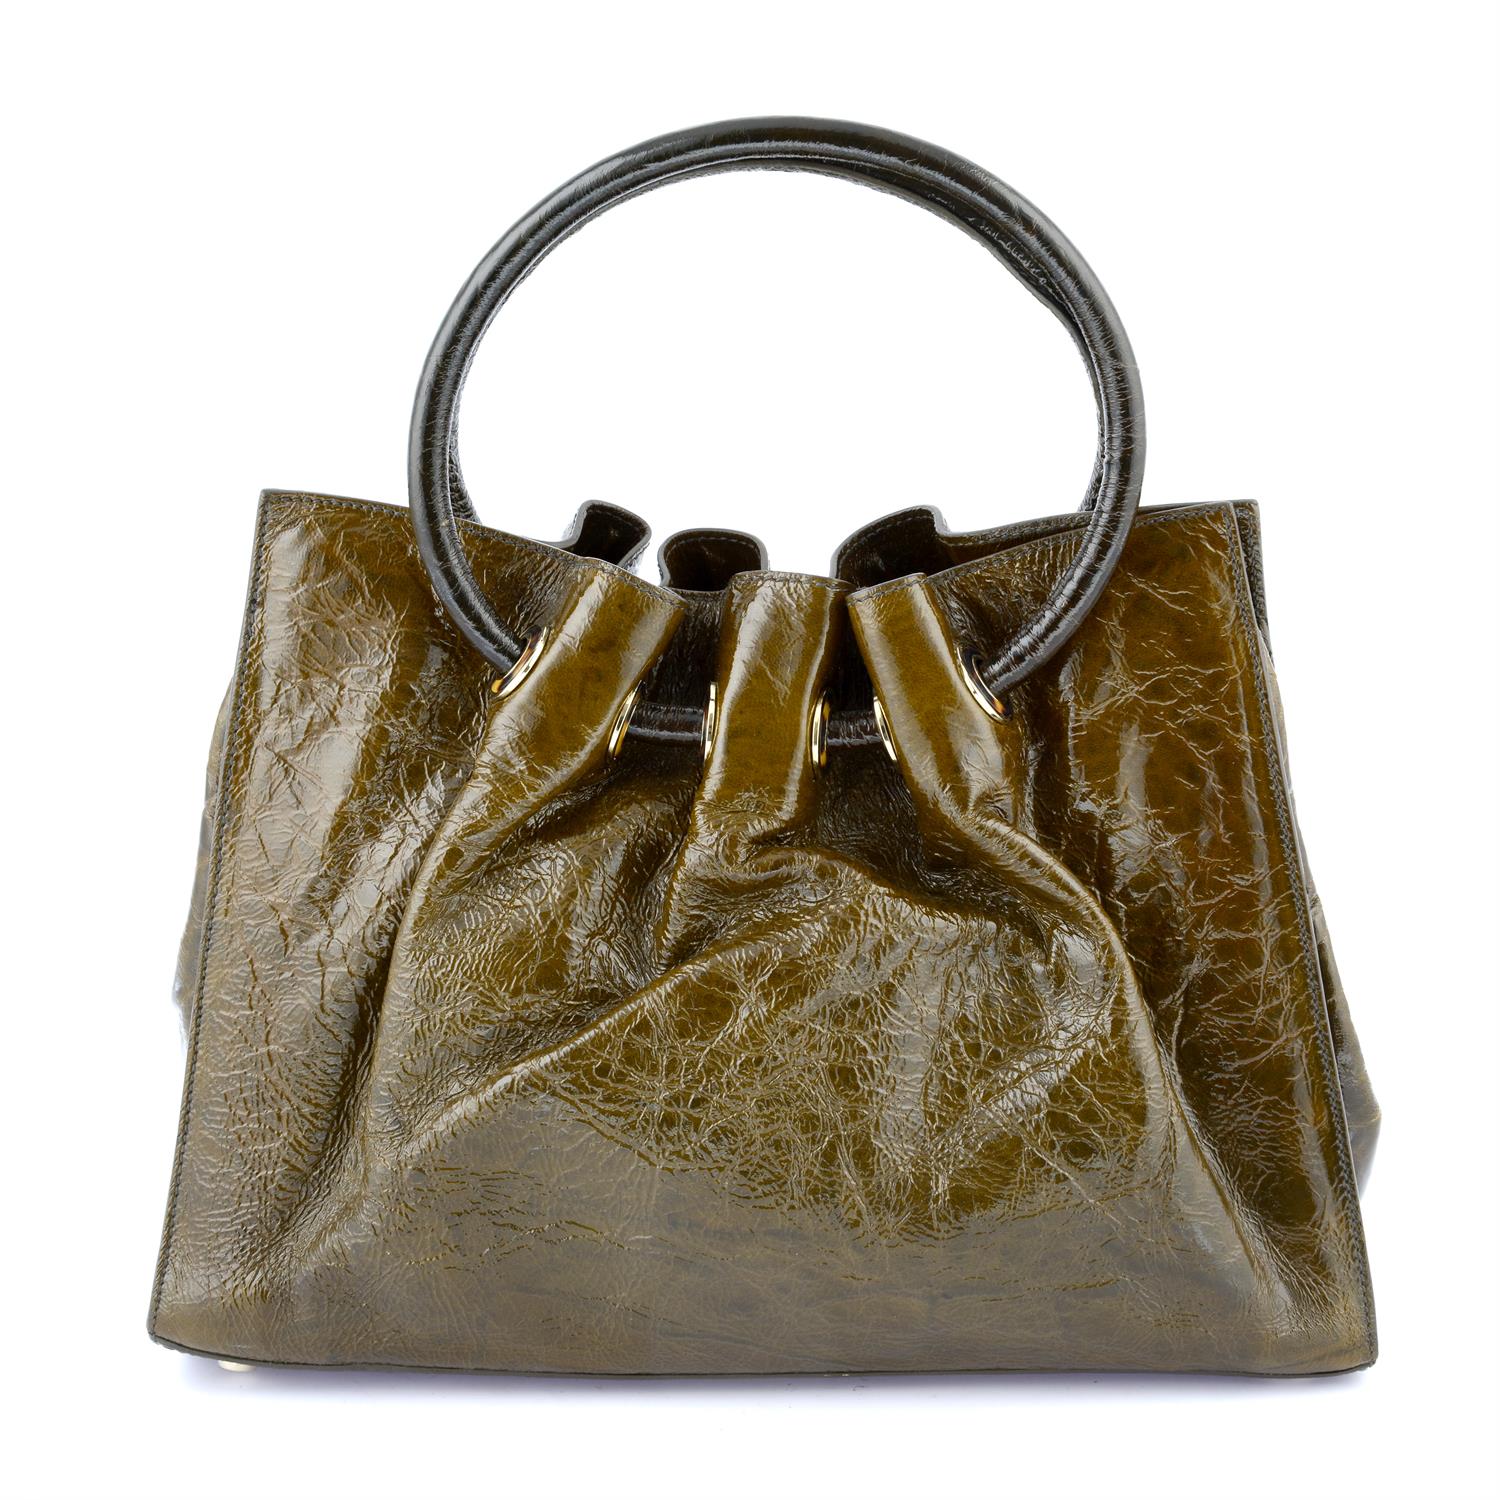 OSCAR DE LA RENTA - a brown patent leather handbag. - Image 2 of 4